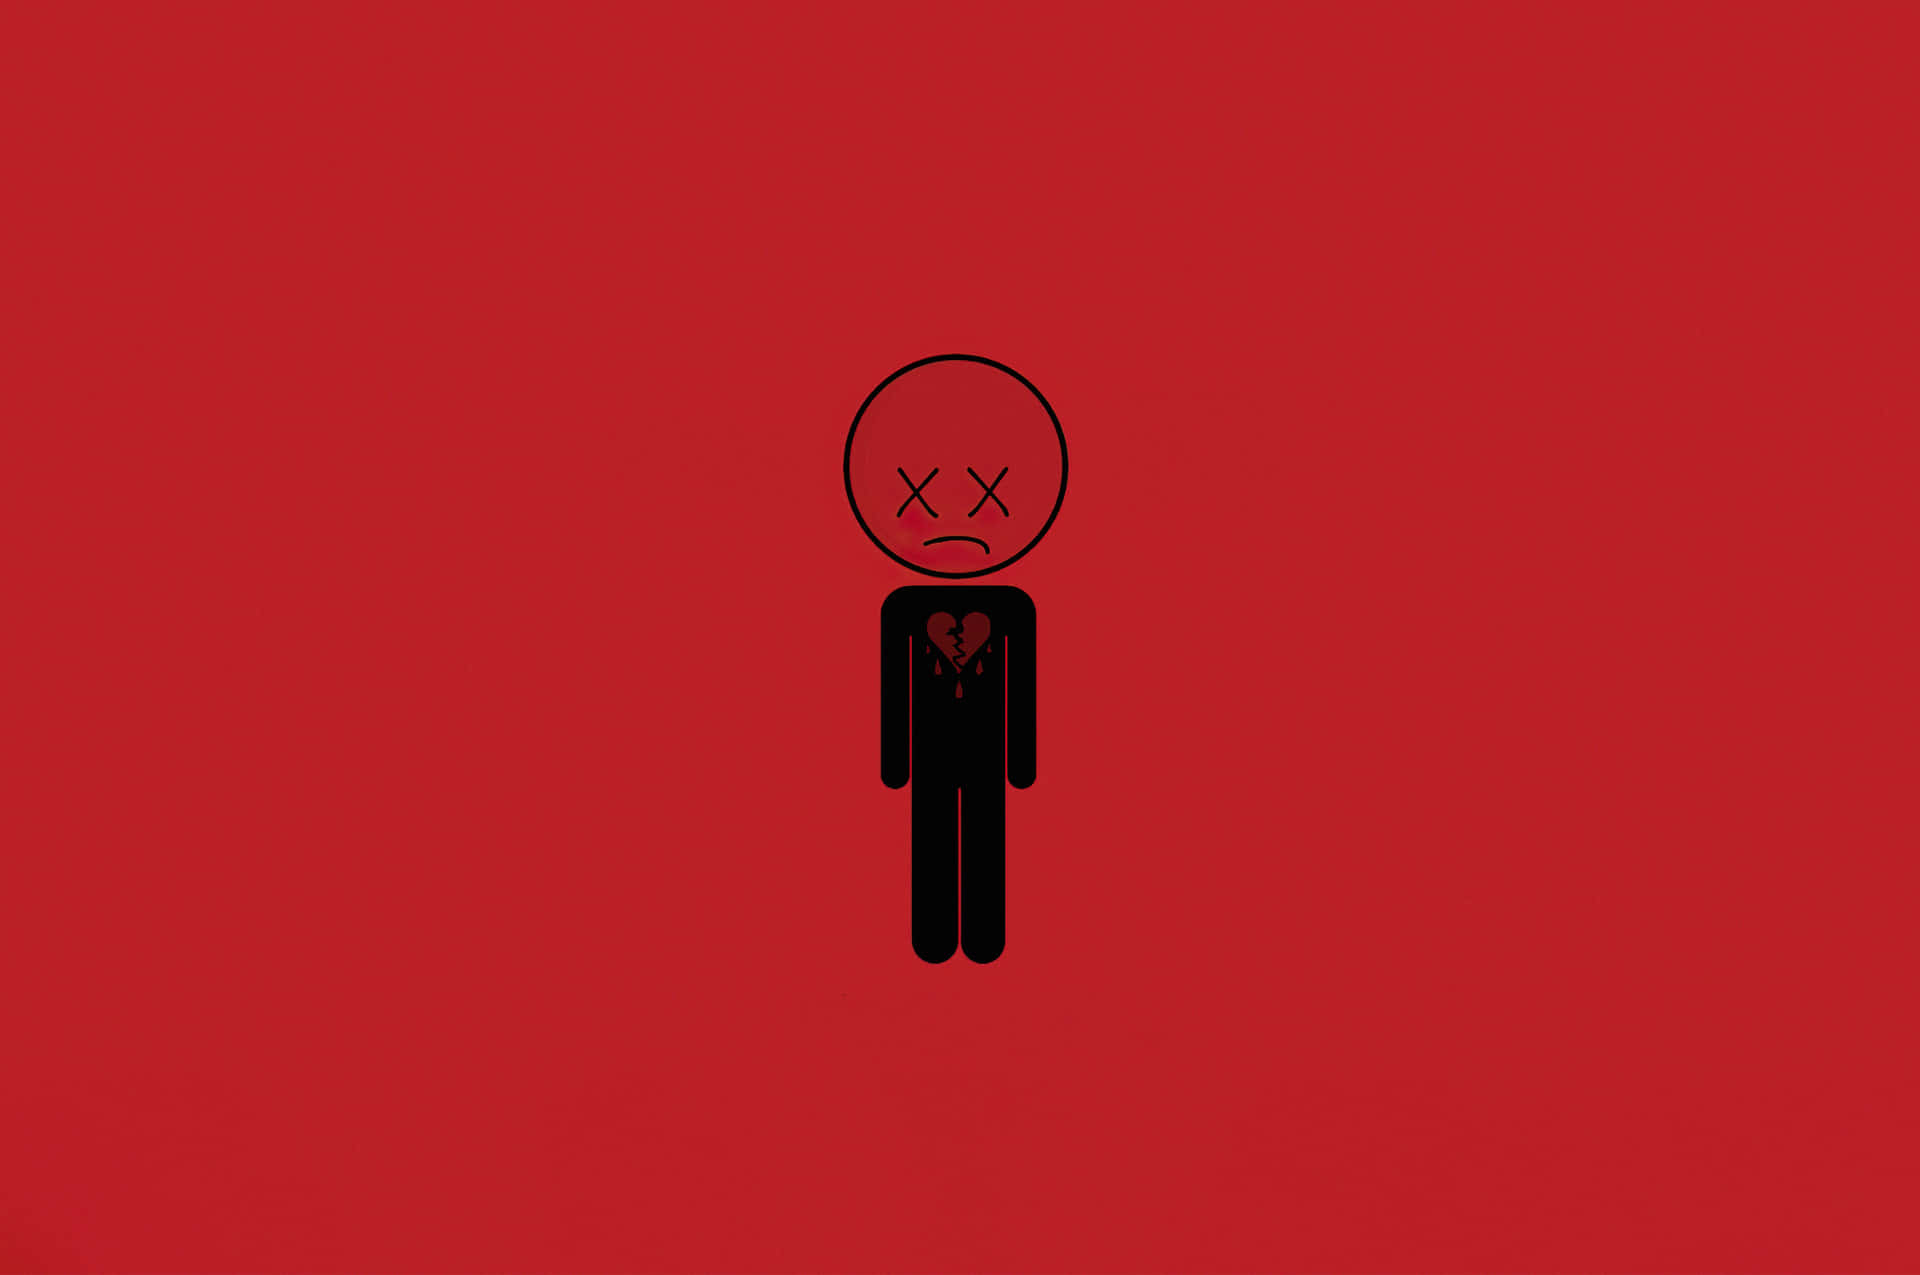 Unosfondo Rosso Con Un Uomo Nero In Piedi Di Fronte Ad Esso